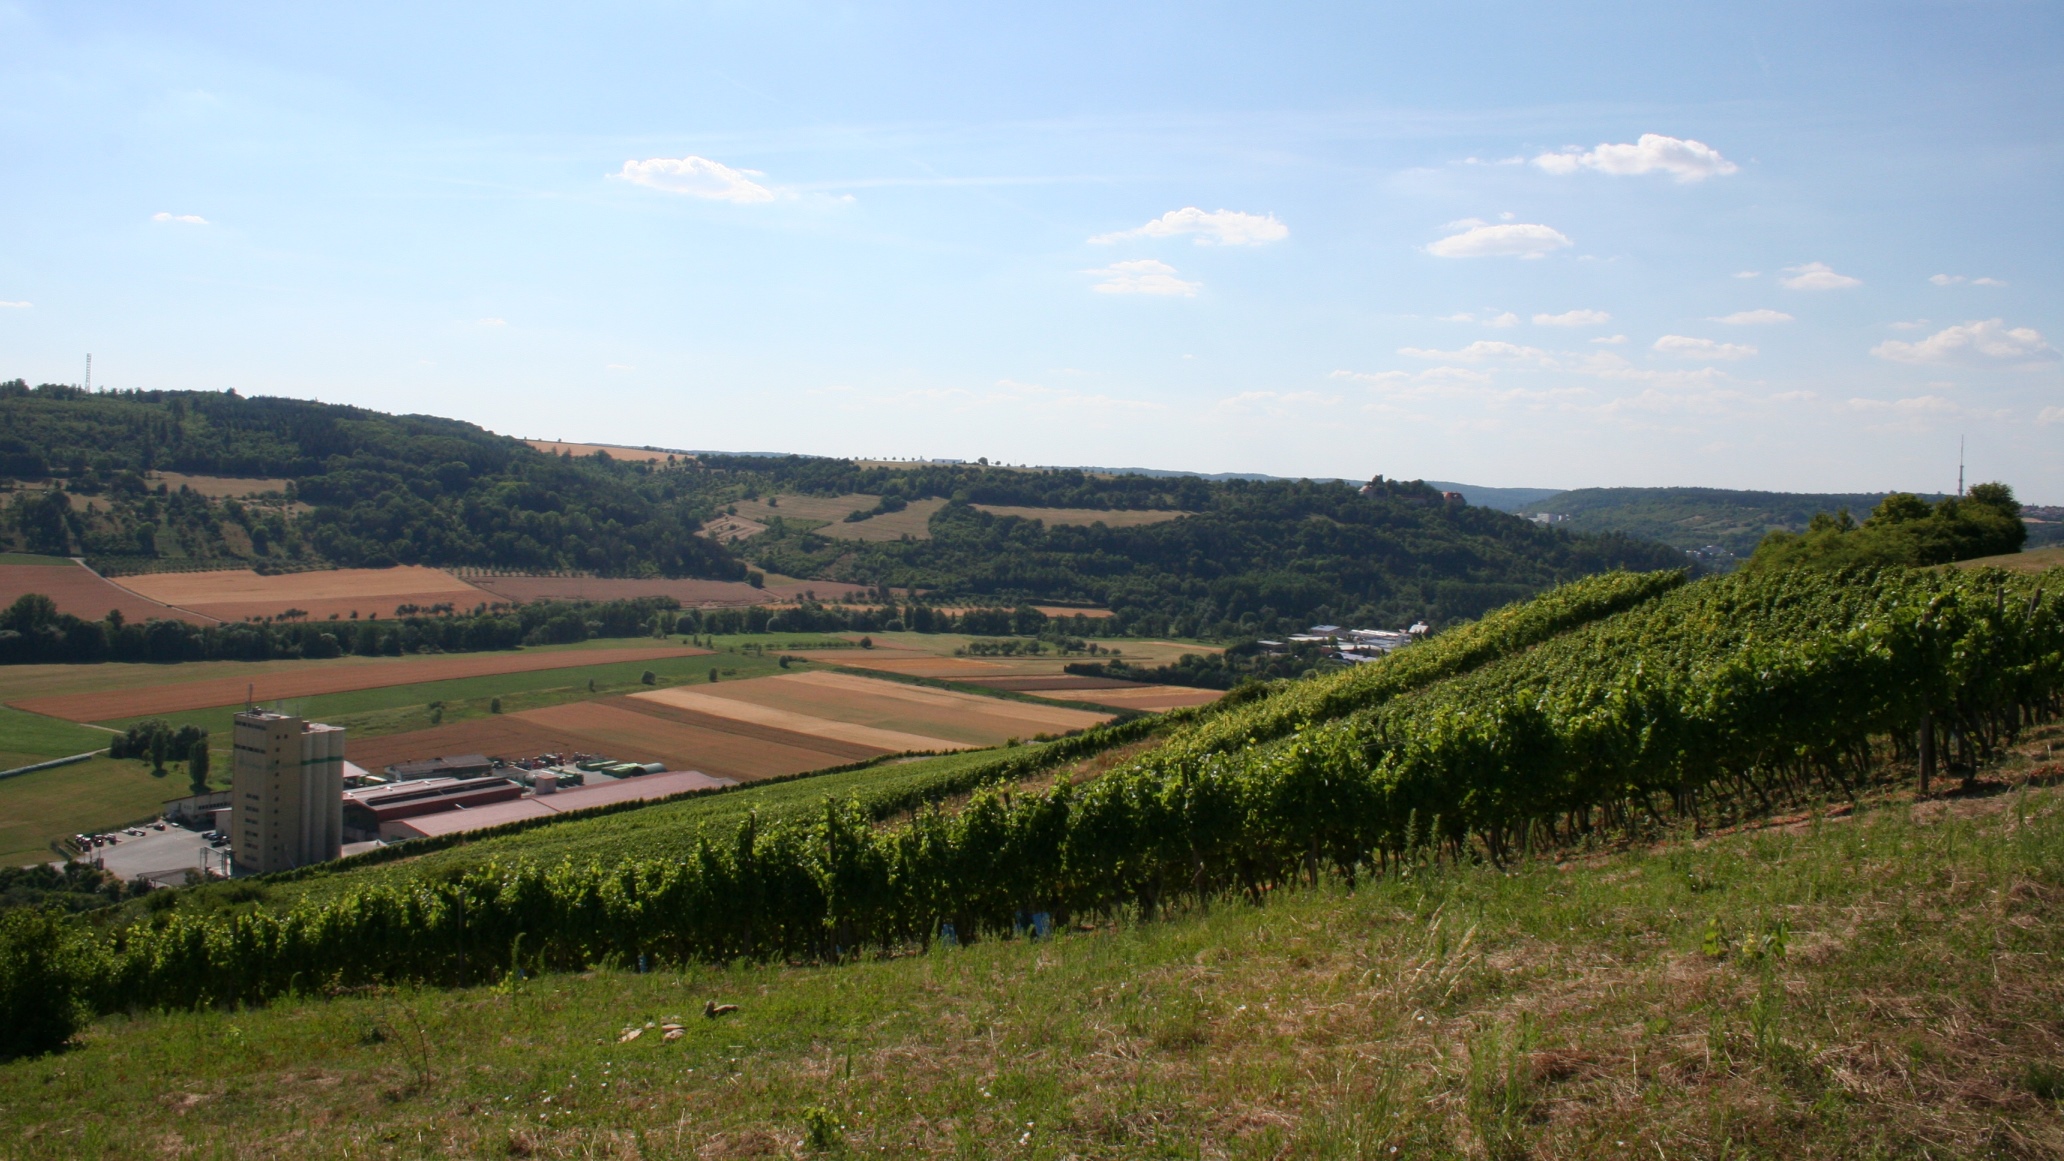 Markelsheim is surrounded by brachtvollen vineyards.